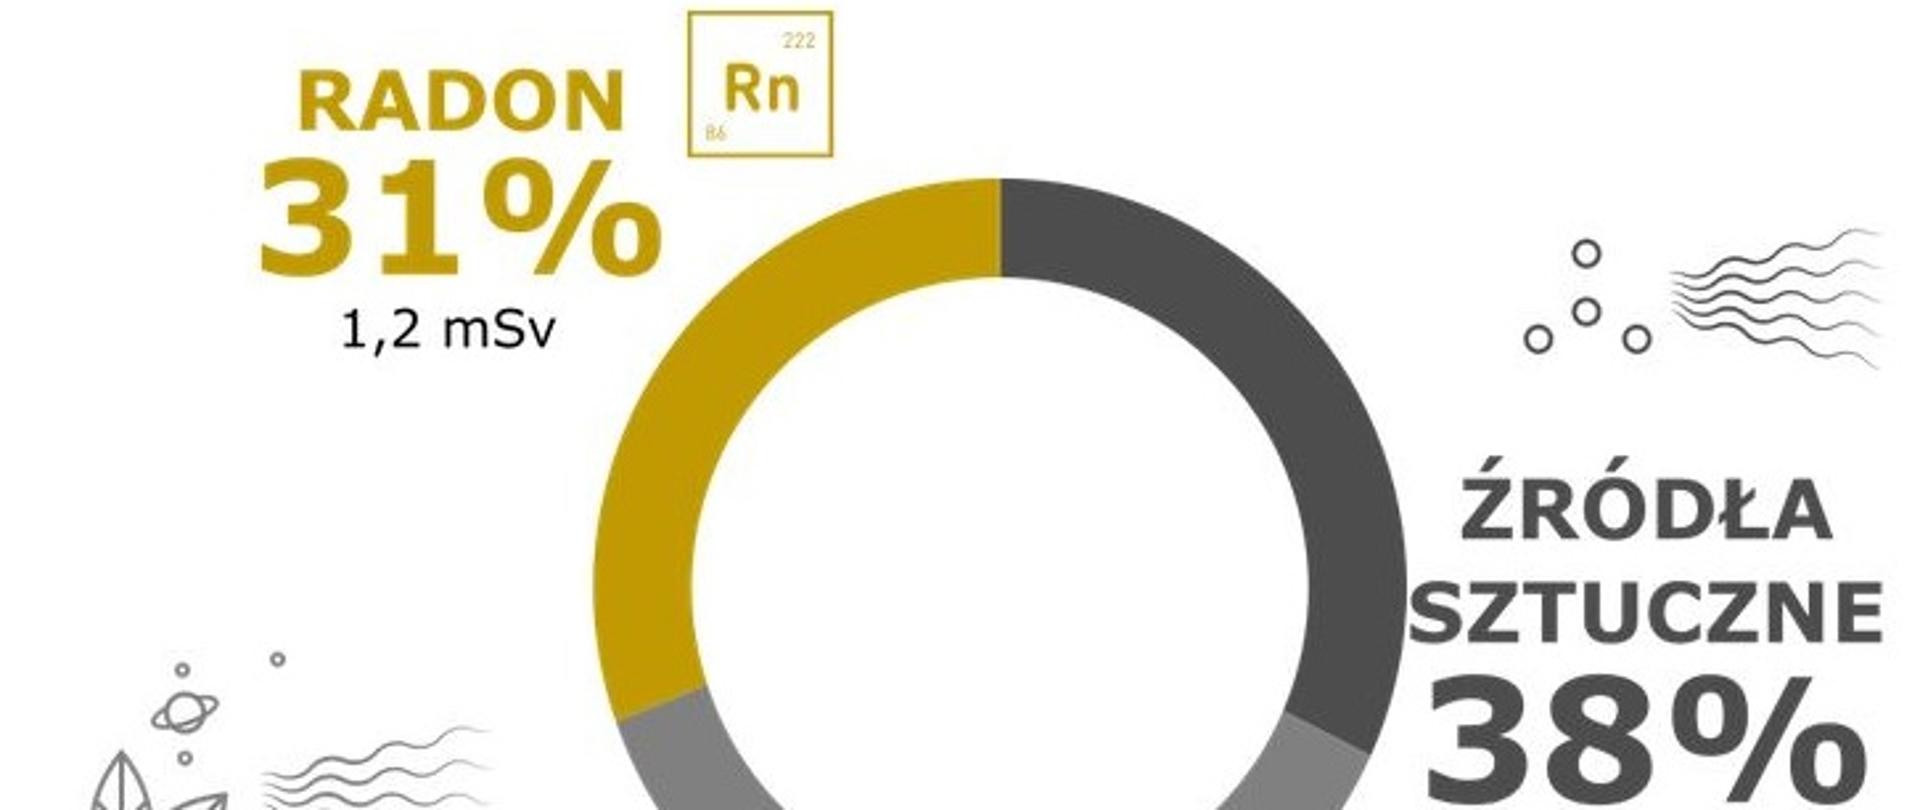 Radon 31%, źródła sztuczne 38%, pozostałe źródła naturalne 32%